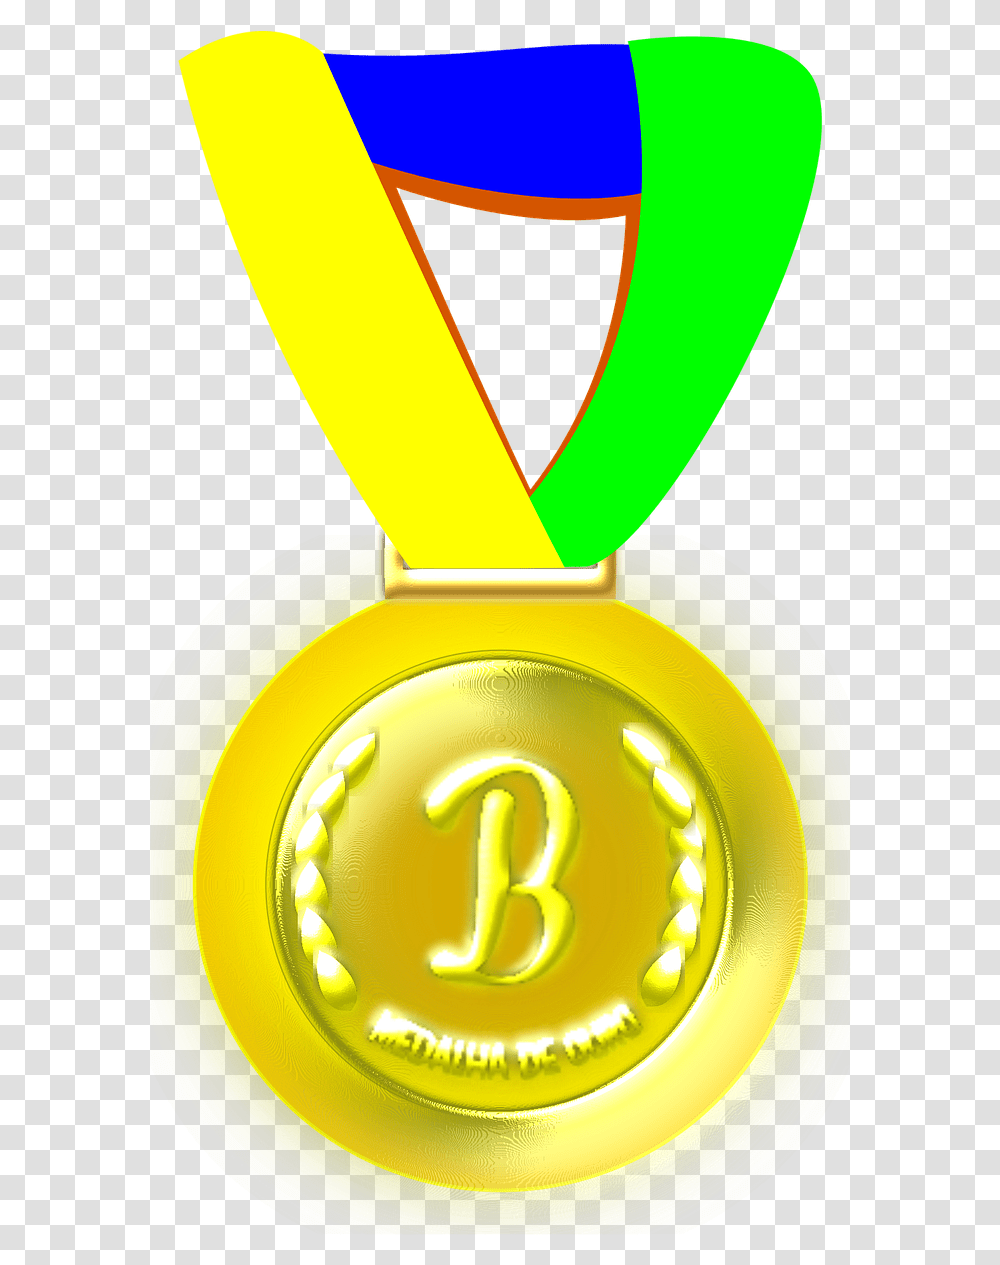 Medalha Brasil, Trophy, Gold, Gold Medal Transparent Png